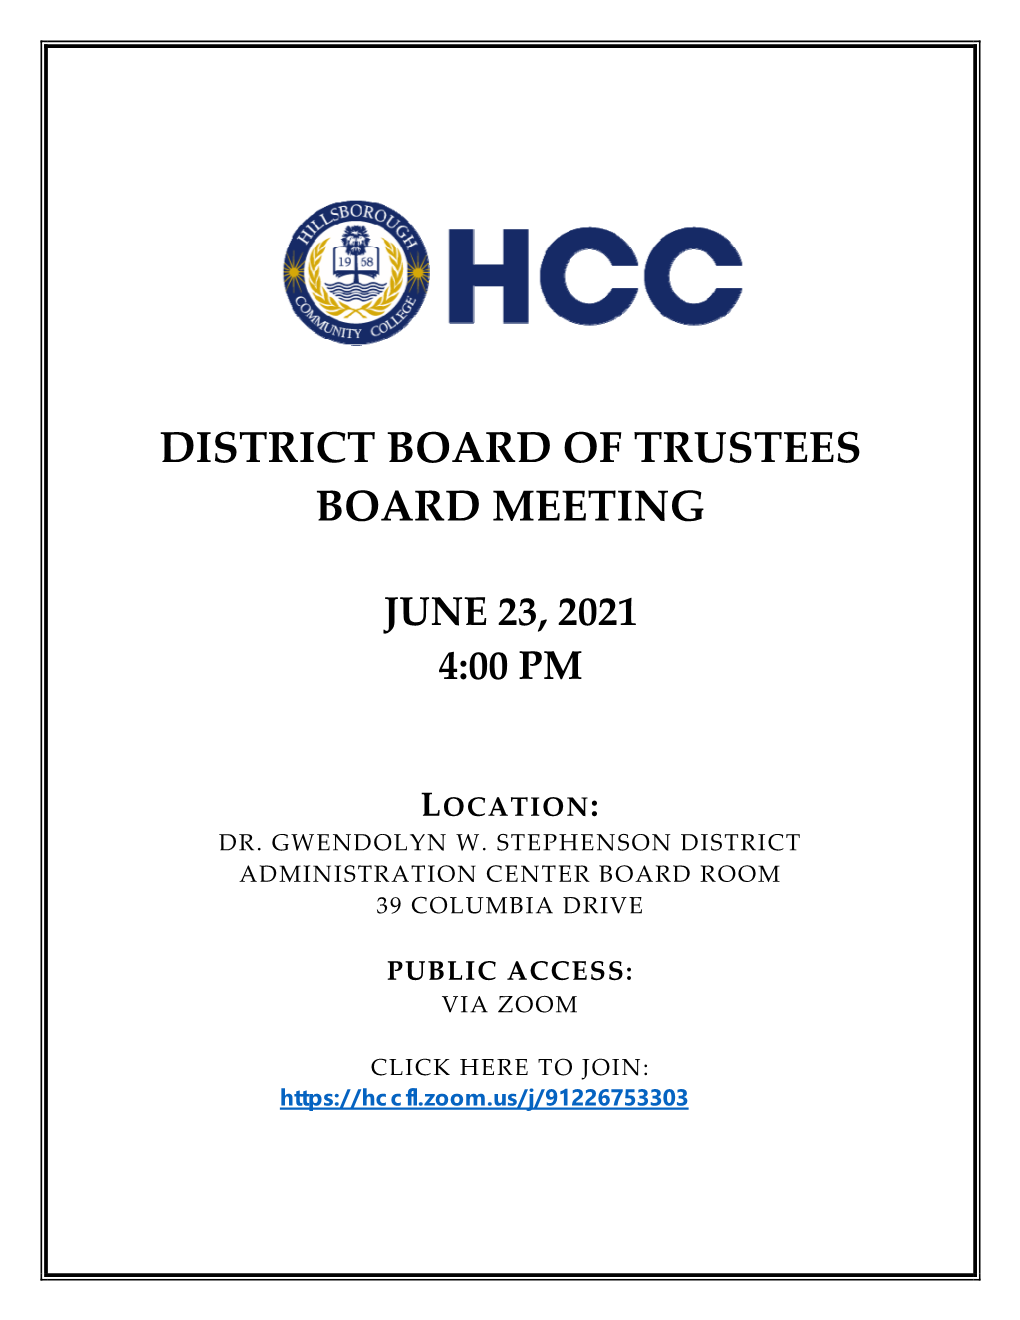 HCC District Board of Trustee's Agenda 062321